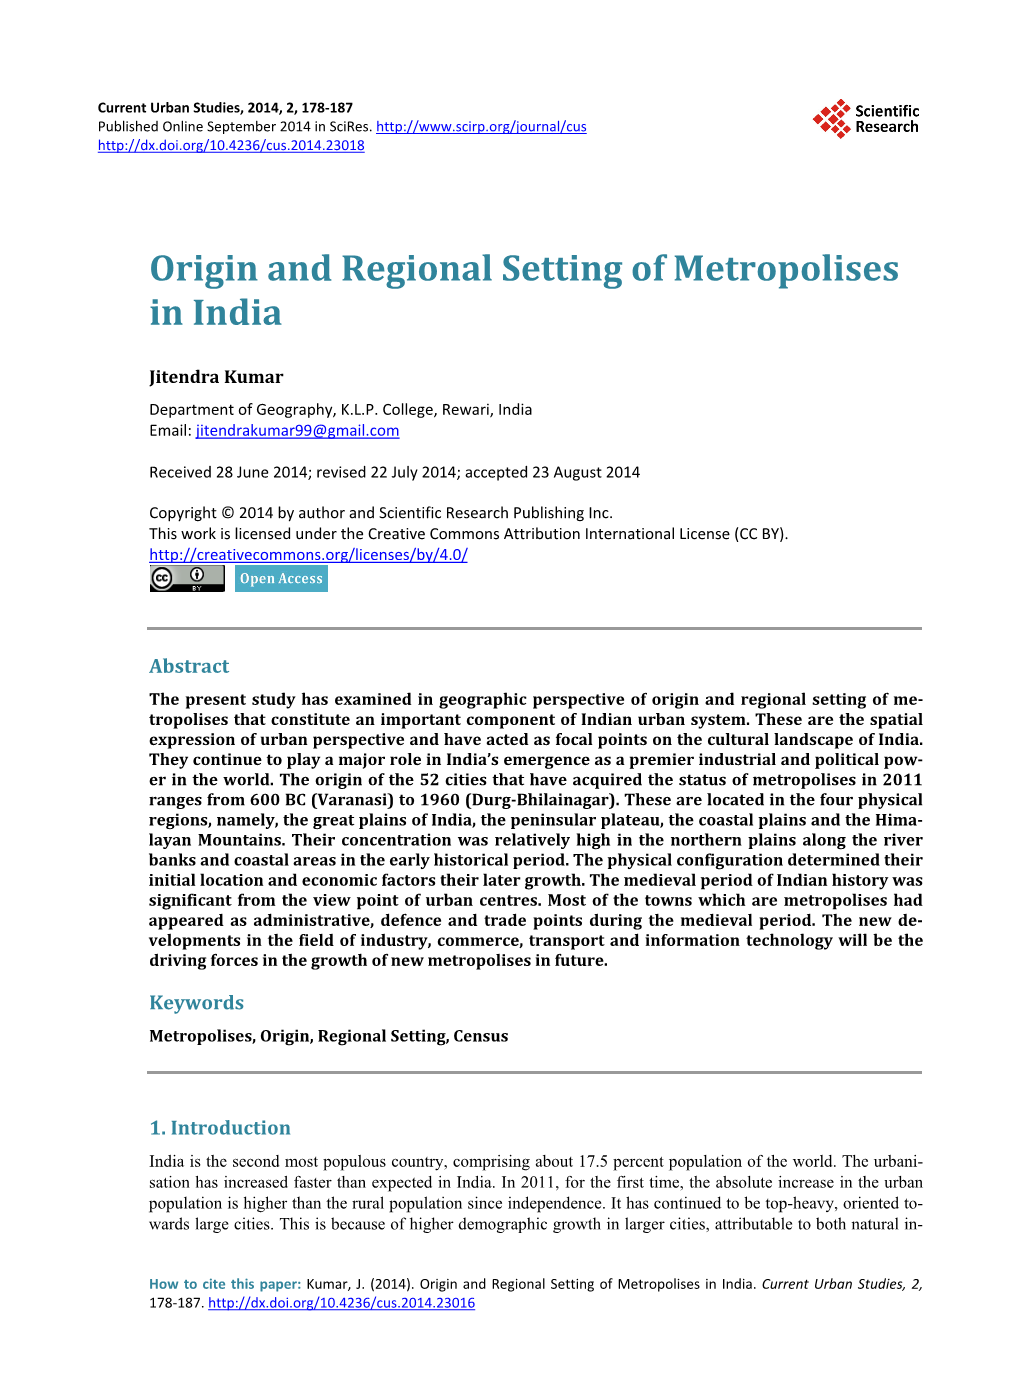 Origin and Regional Setting of Metropolises in India